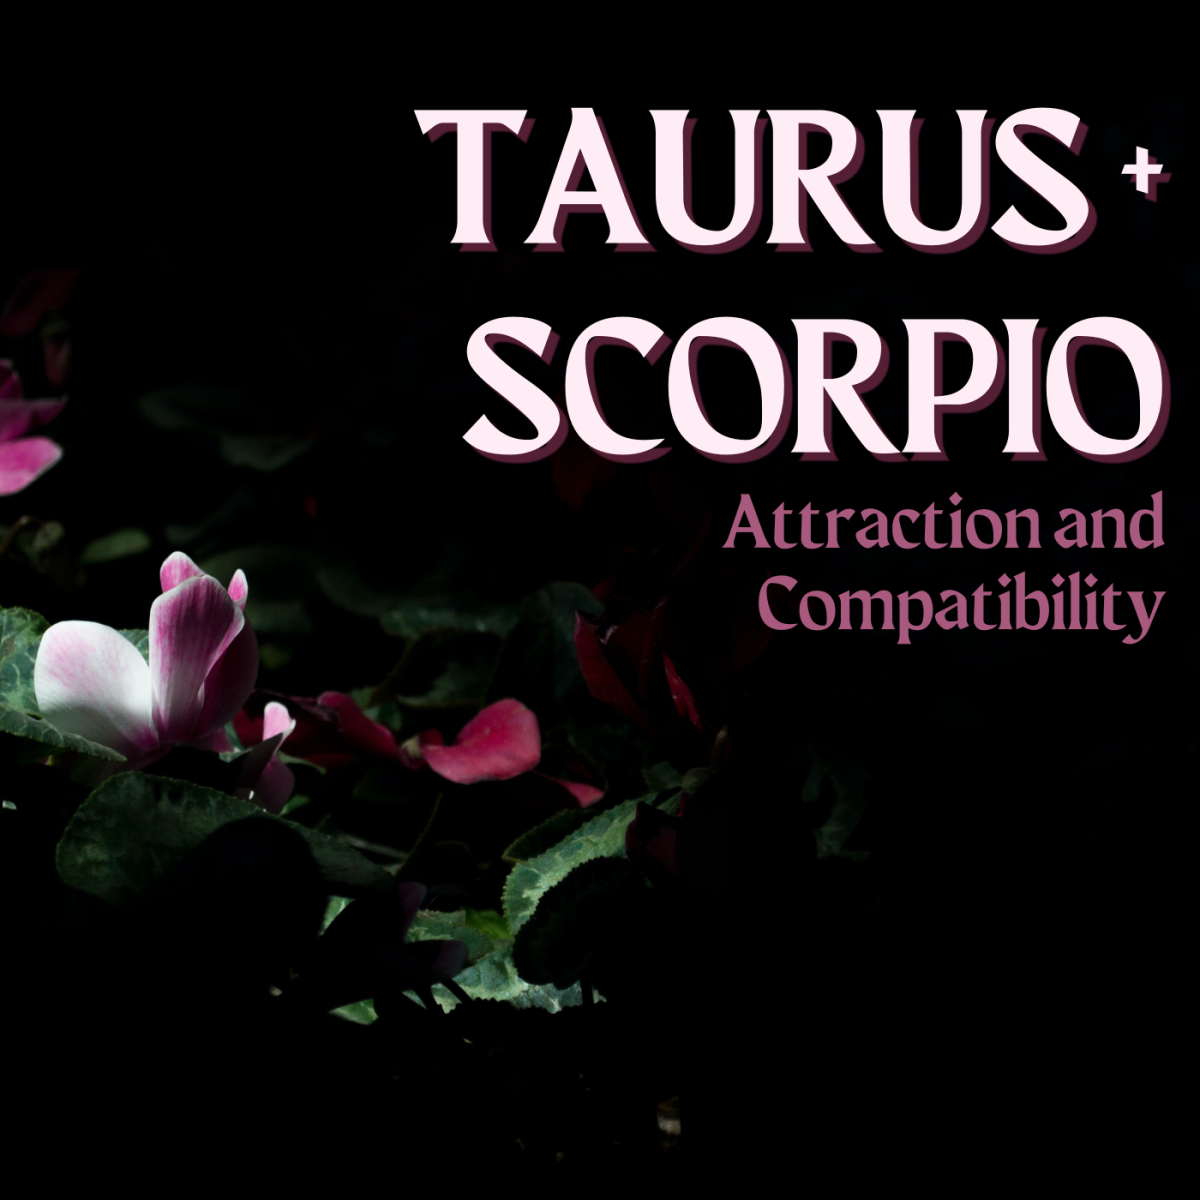 When Taurus' spring meets Scorpio's autumn, passion arises.